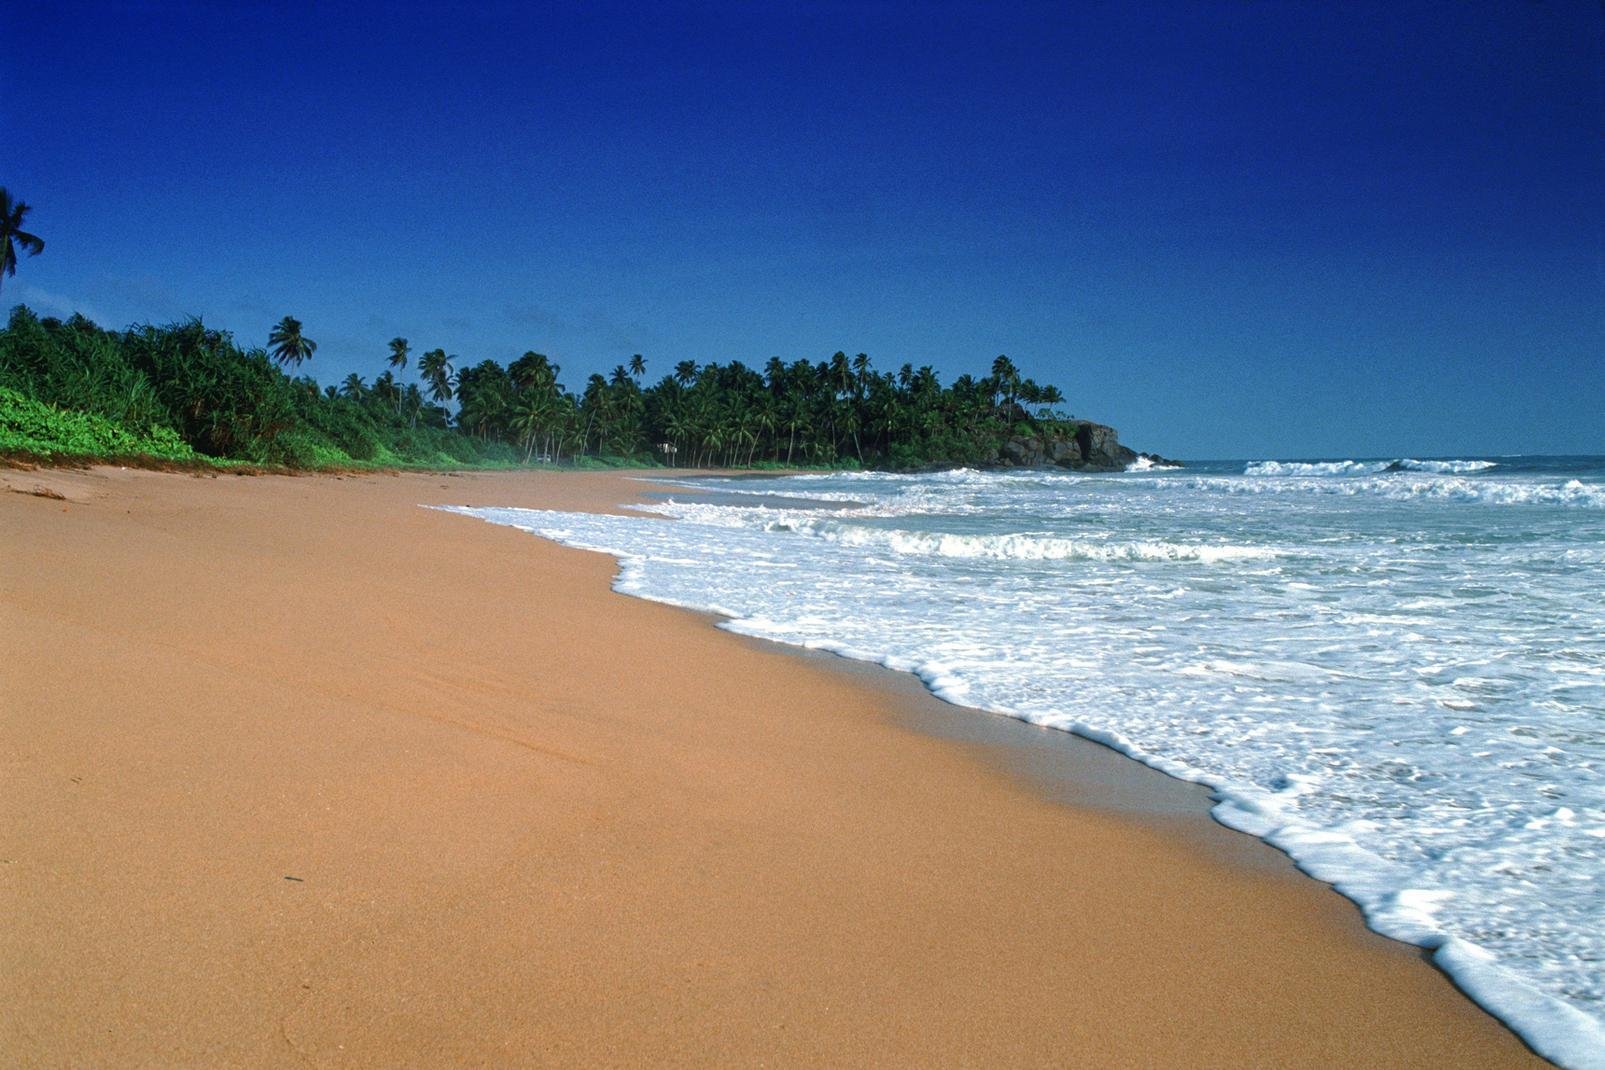 Hat man die Vororte Colombos erst einmal hinter sich gelassen und fährt an der Westküste Sri Lankas Richtung Süden wird die Landschaft nach und nach immer reizvoller.

Bentota ist seit einigen Jahren zu einem bei Touristen sehr beliebten Badeort geworden. Er verdankt diesen Ruf feinen Sandstränden, die von Kokospalmen gesäumt werden. Man kommt in diese Gegend, um sich zu erholen und das Meer zu genießen.Aber ...